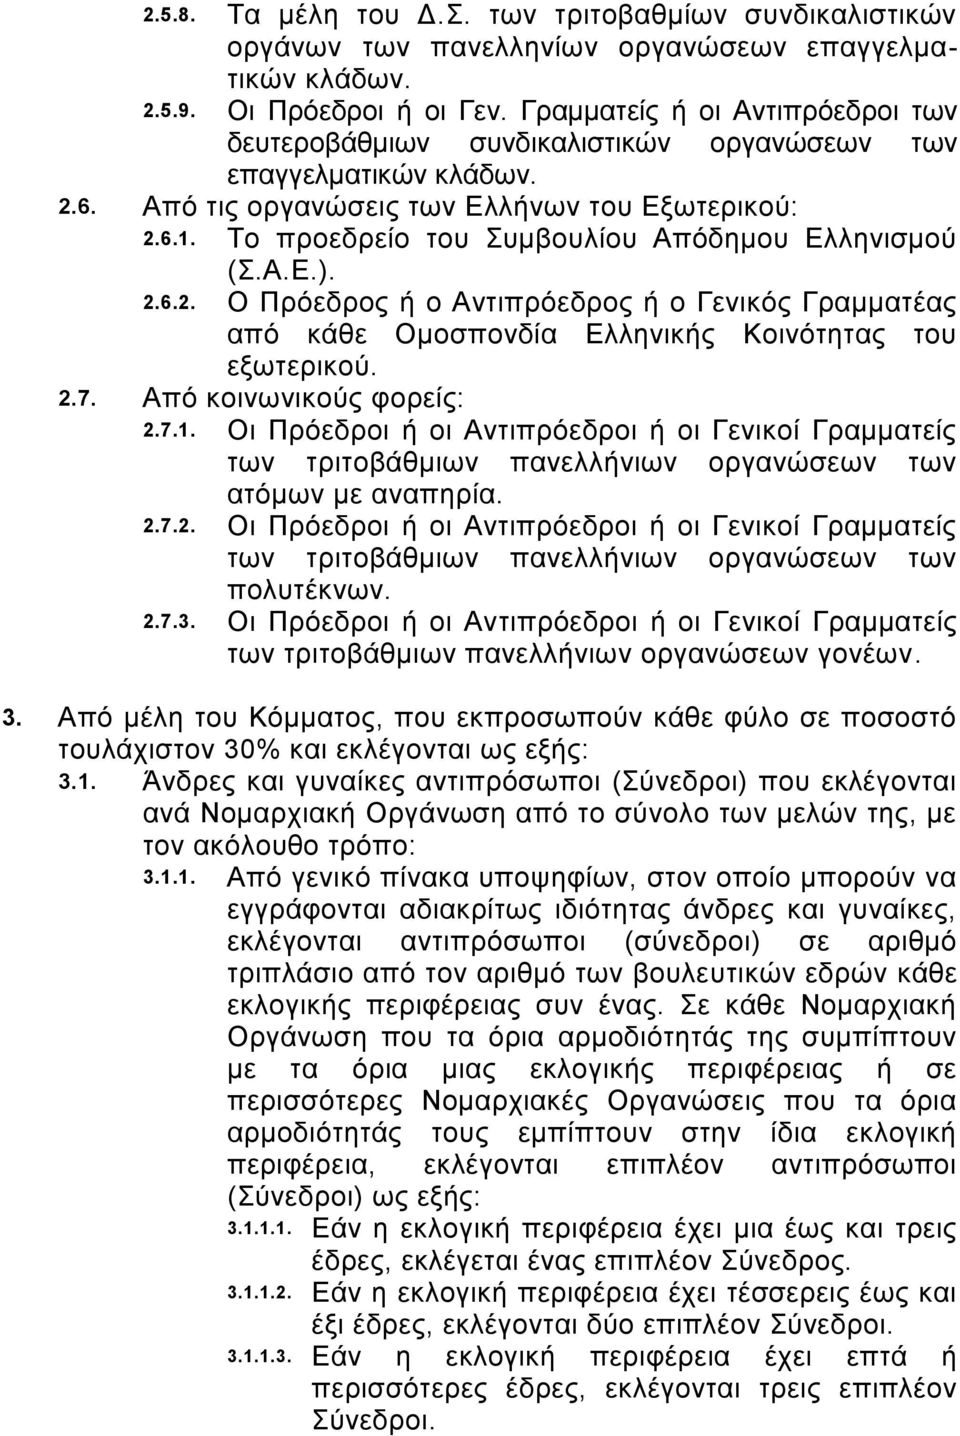 Το προεδρείο του Συμβουλίου Απόδημου Ελληνισμού (Σ.Α.Ε.). 2.6.2. Ο Πρόεδρος ή ο Αντιπρόεδρος ή ο Γενικός Γραμματέας από κάθε Ομοσπονδία Ελληνικής Κοινότητας του εξωτερικού. 2.7.